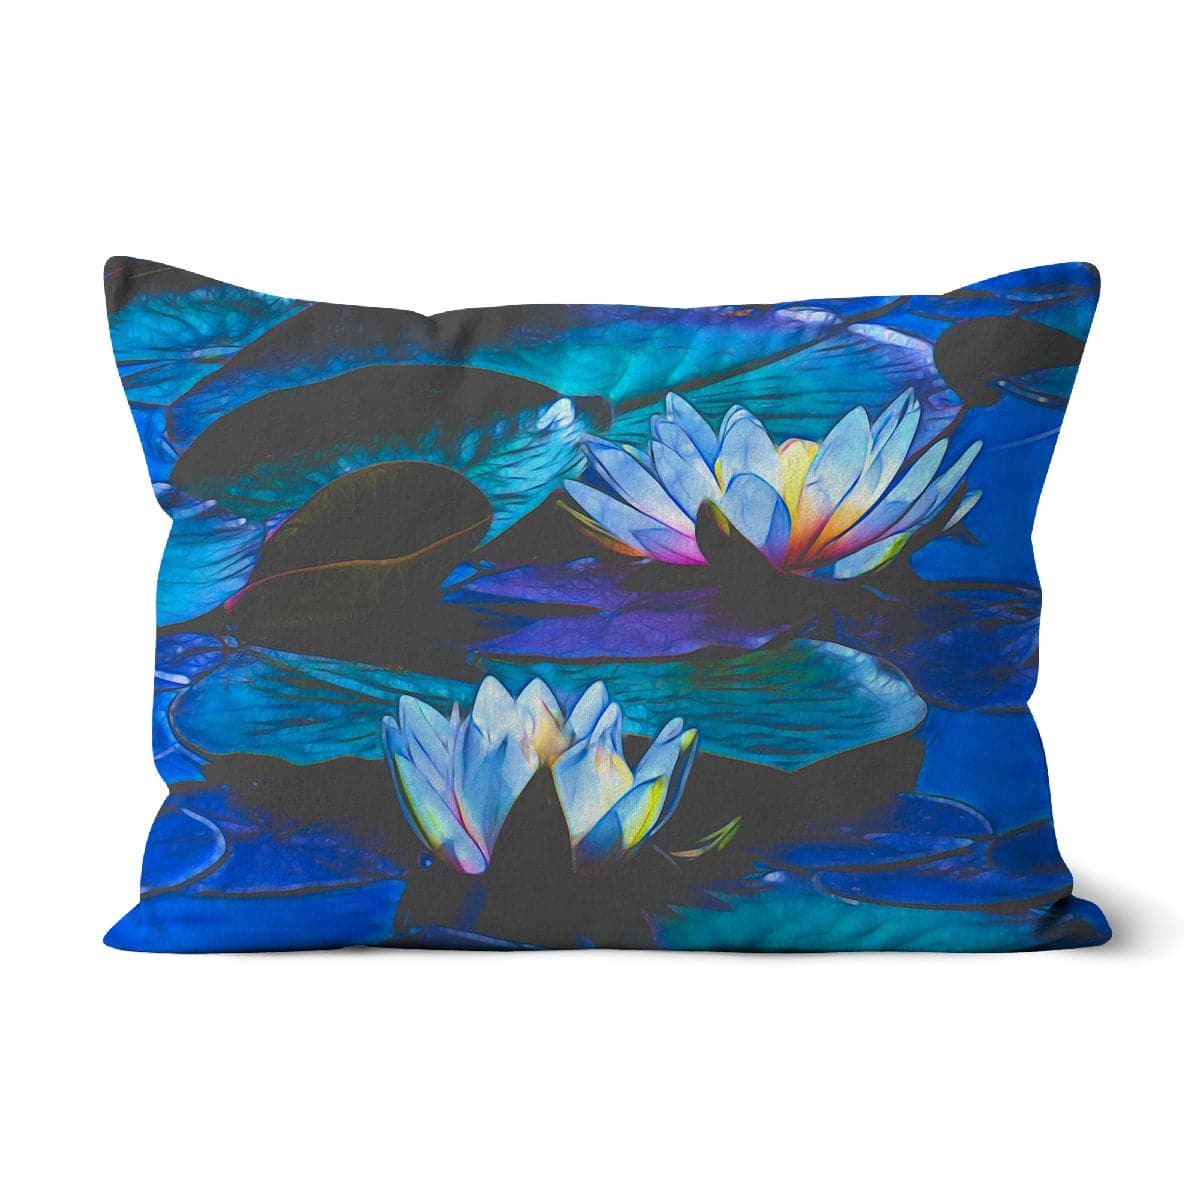 Blue waterlilies _3 Cushion